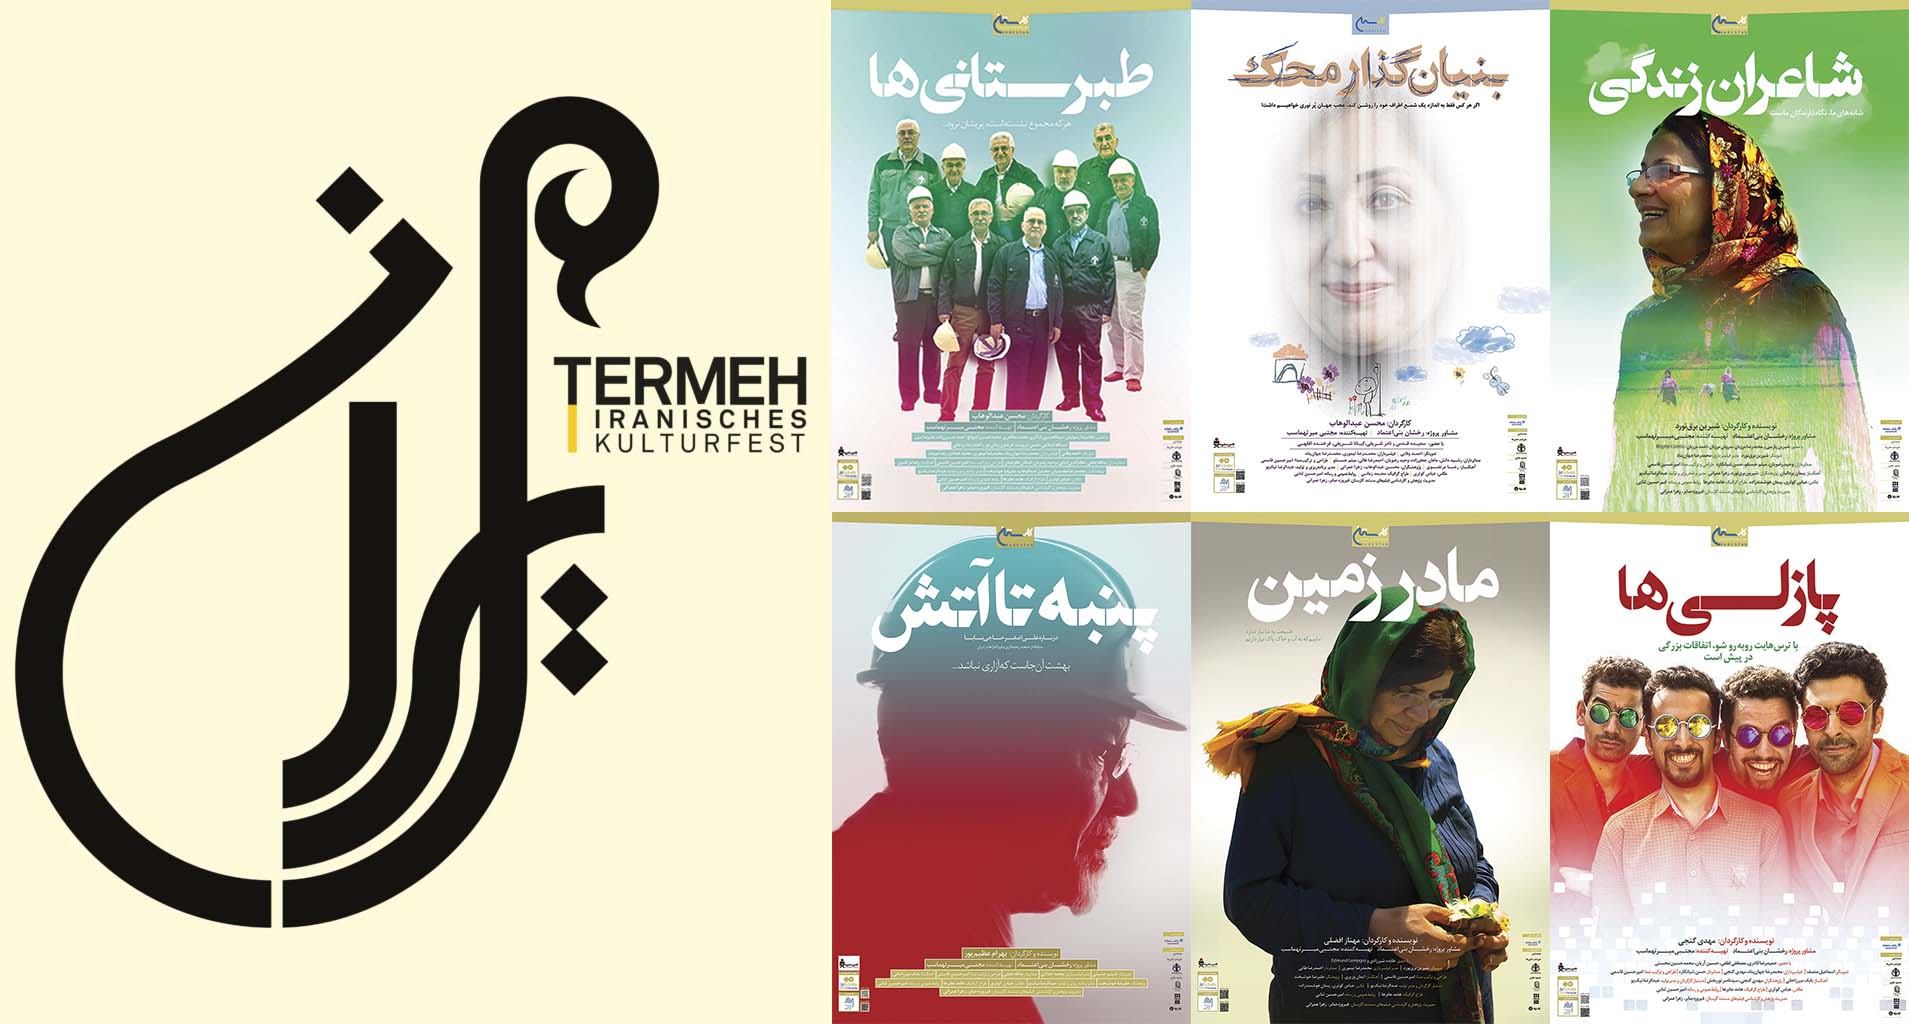 نمایش شش فیلم کارستان دردومین جشنواره فرهنگی ترمه در مونیخ